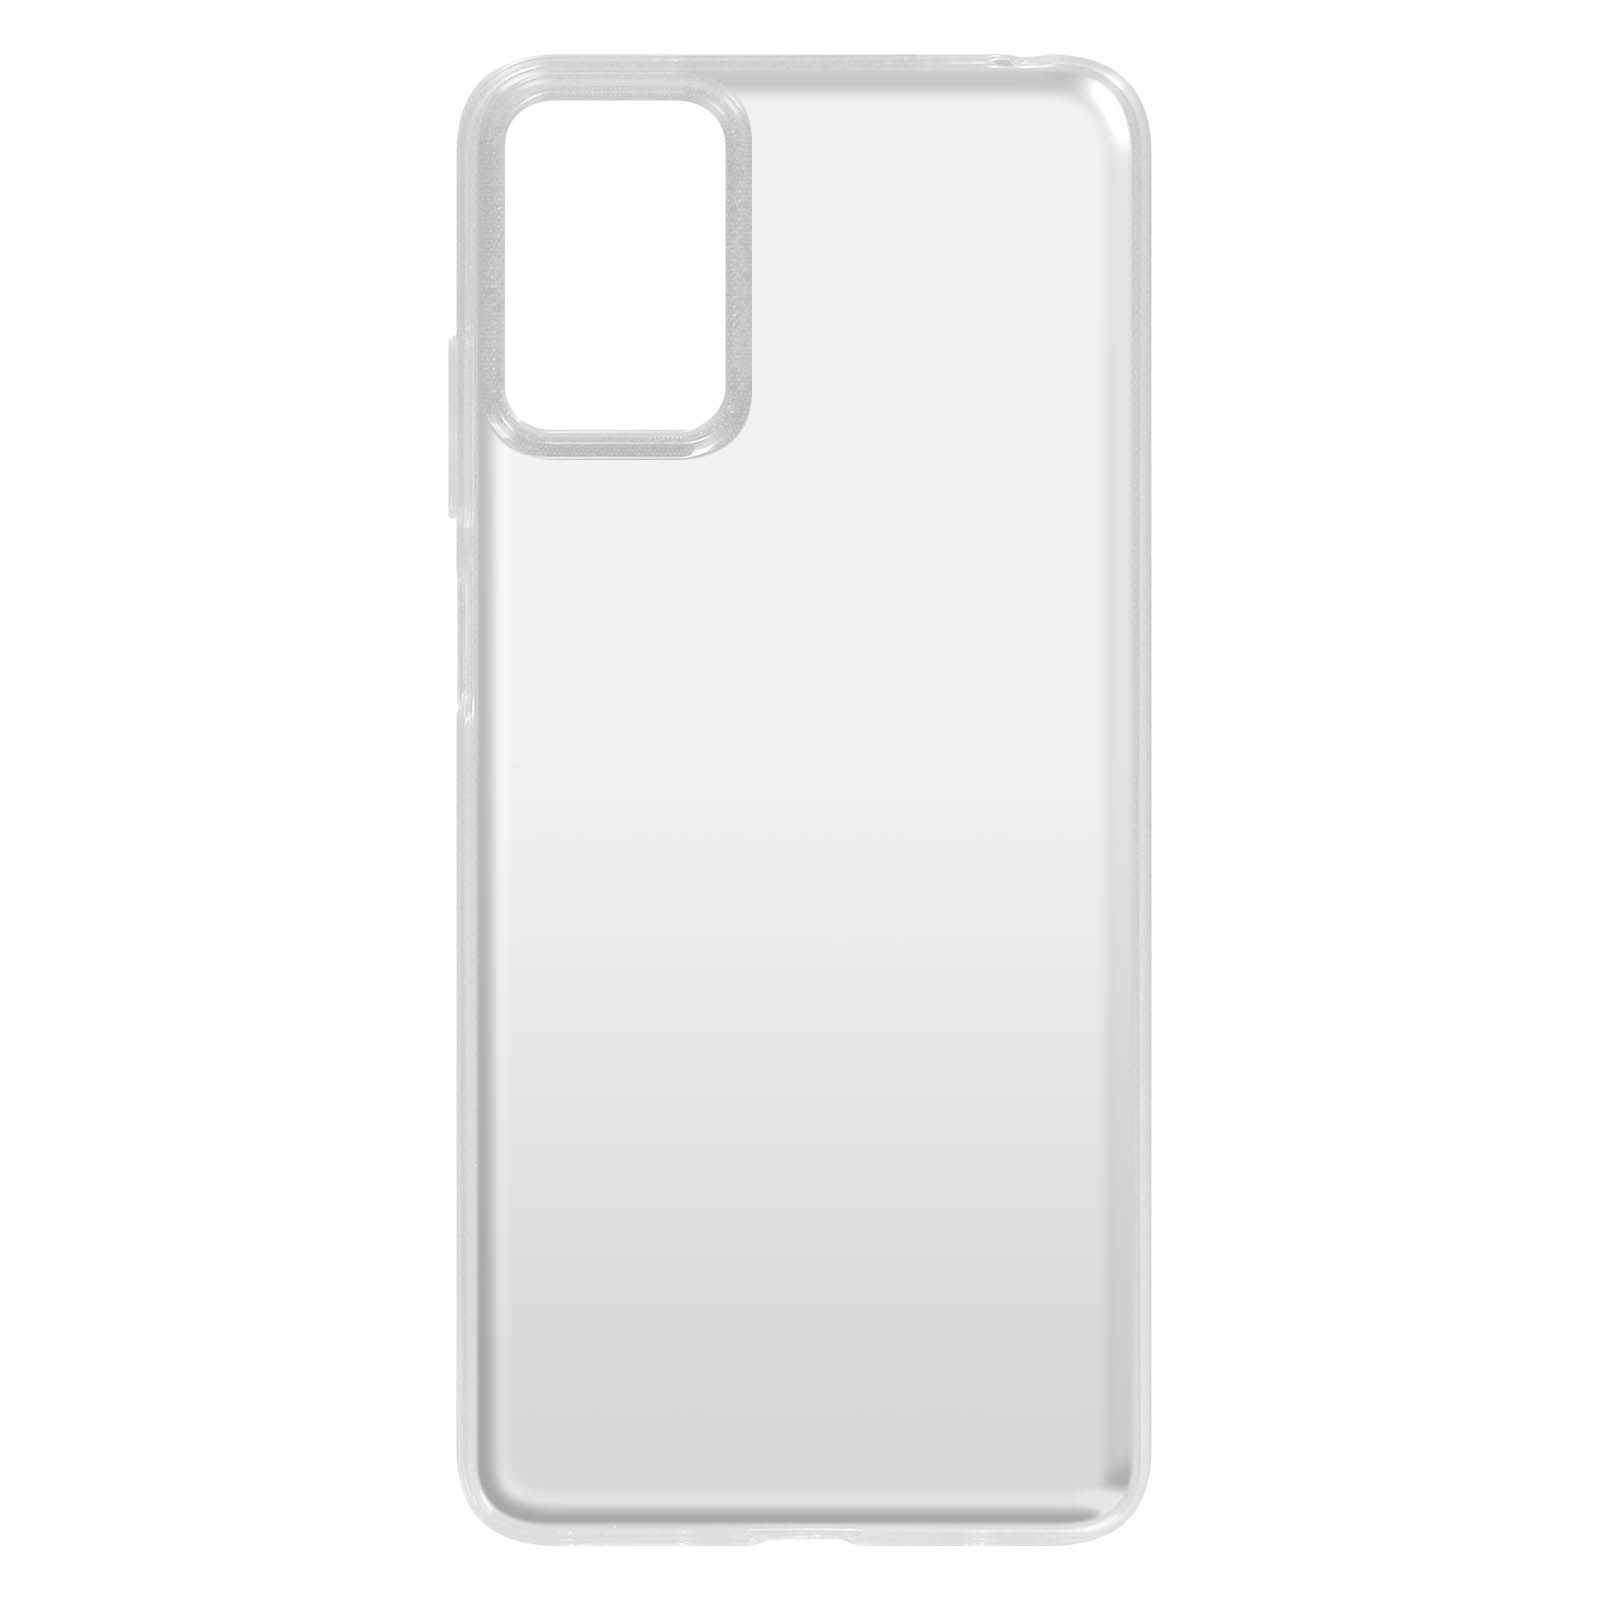 Backcover, Skin Moto Series, E22i, AVIZAR Motorola, Transparent